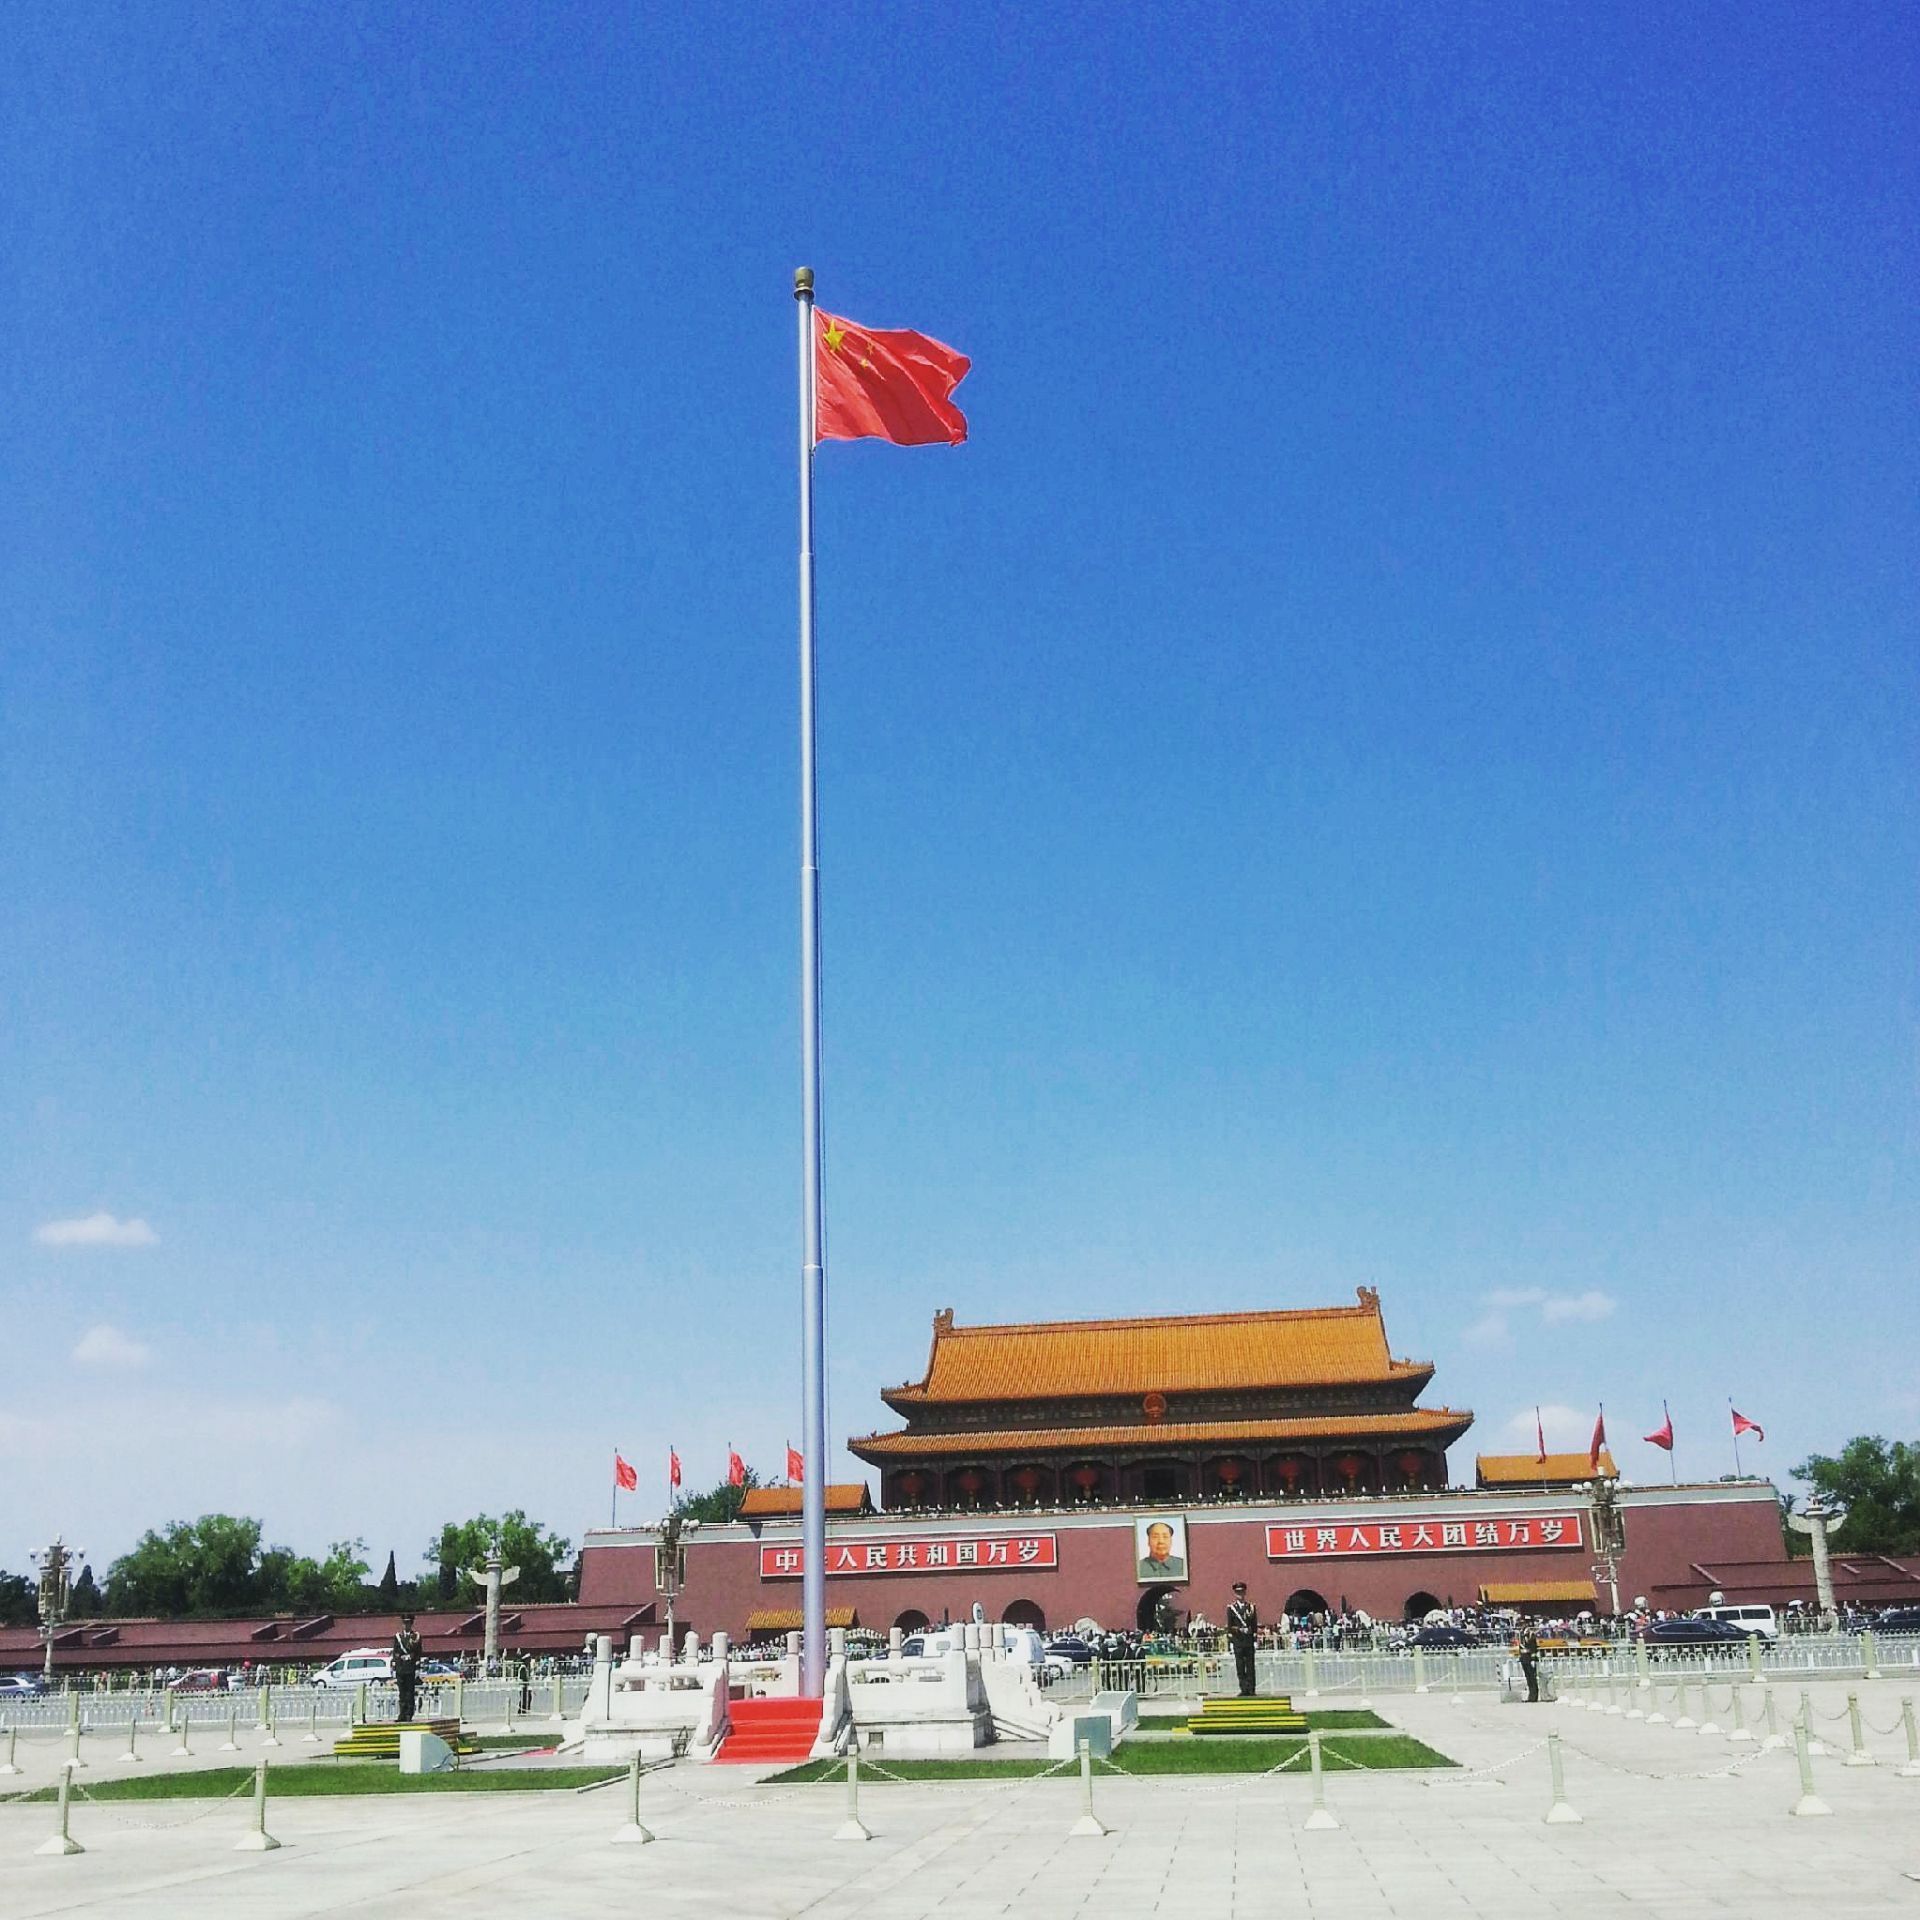 孙中山巨幅画像亮相北京天安门广场